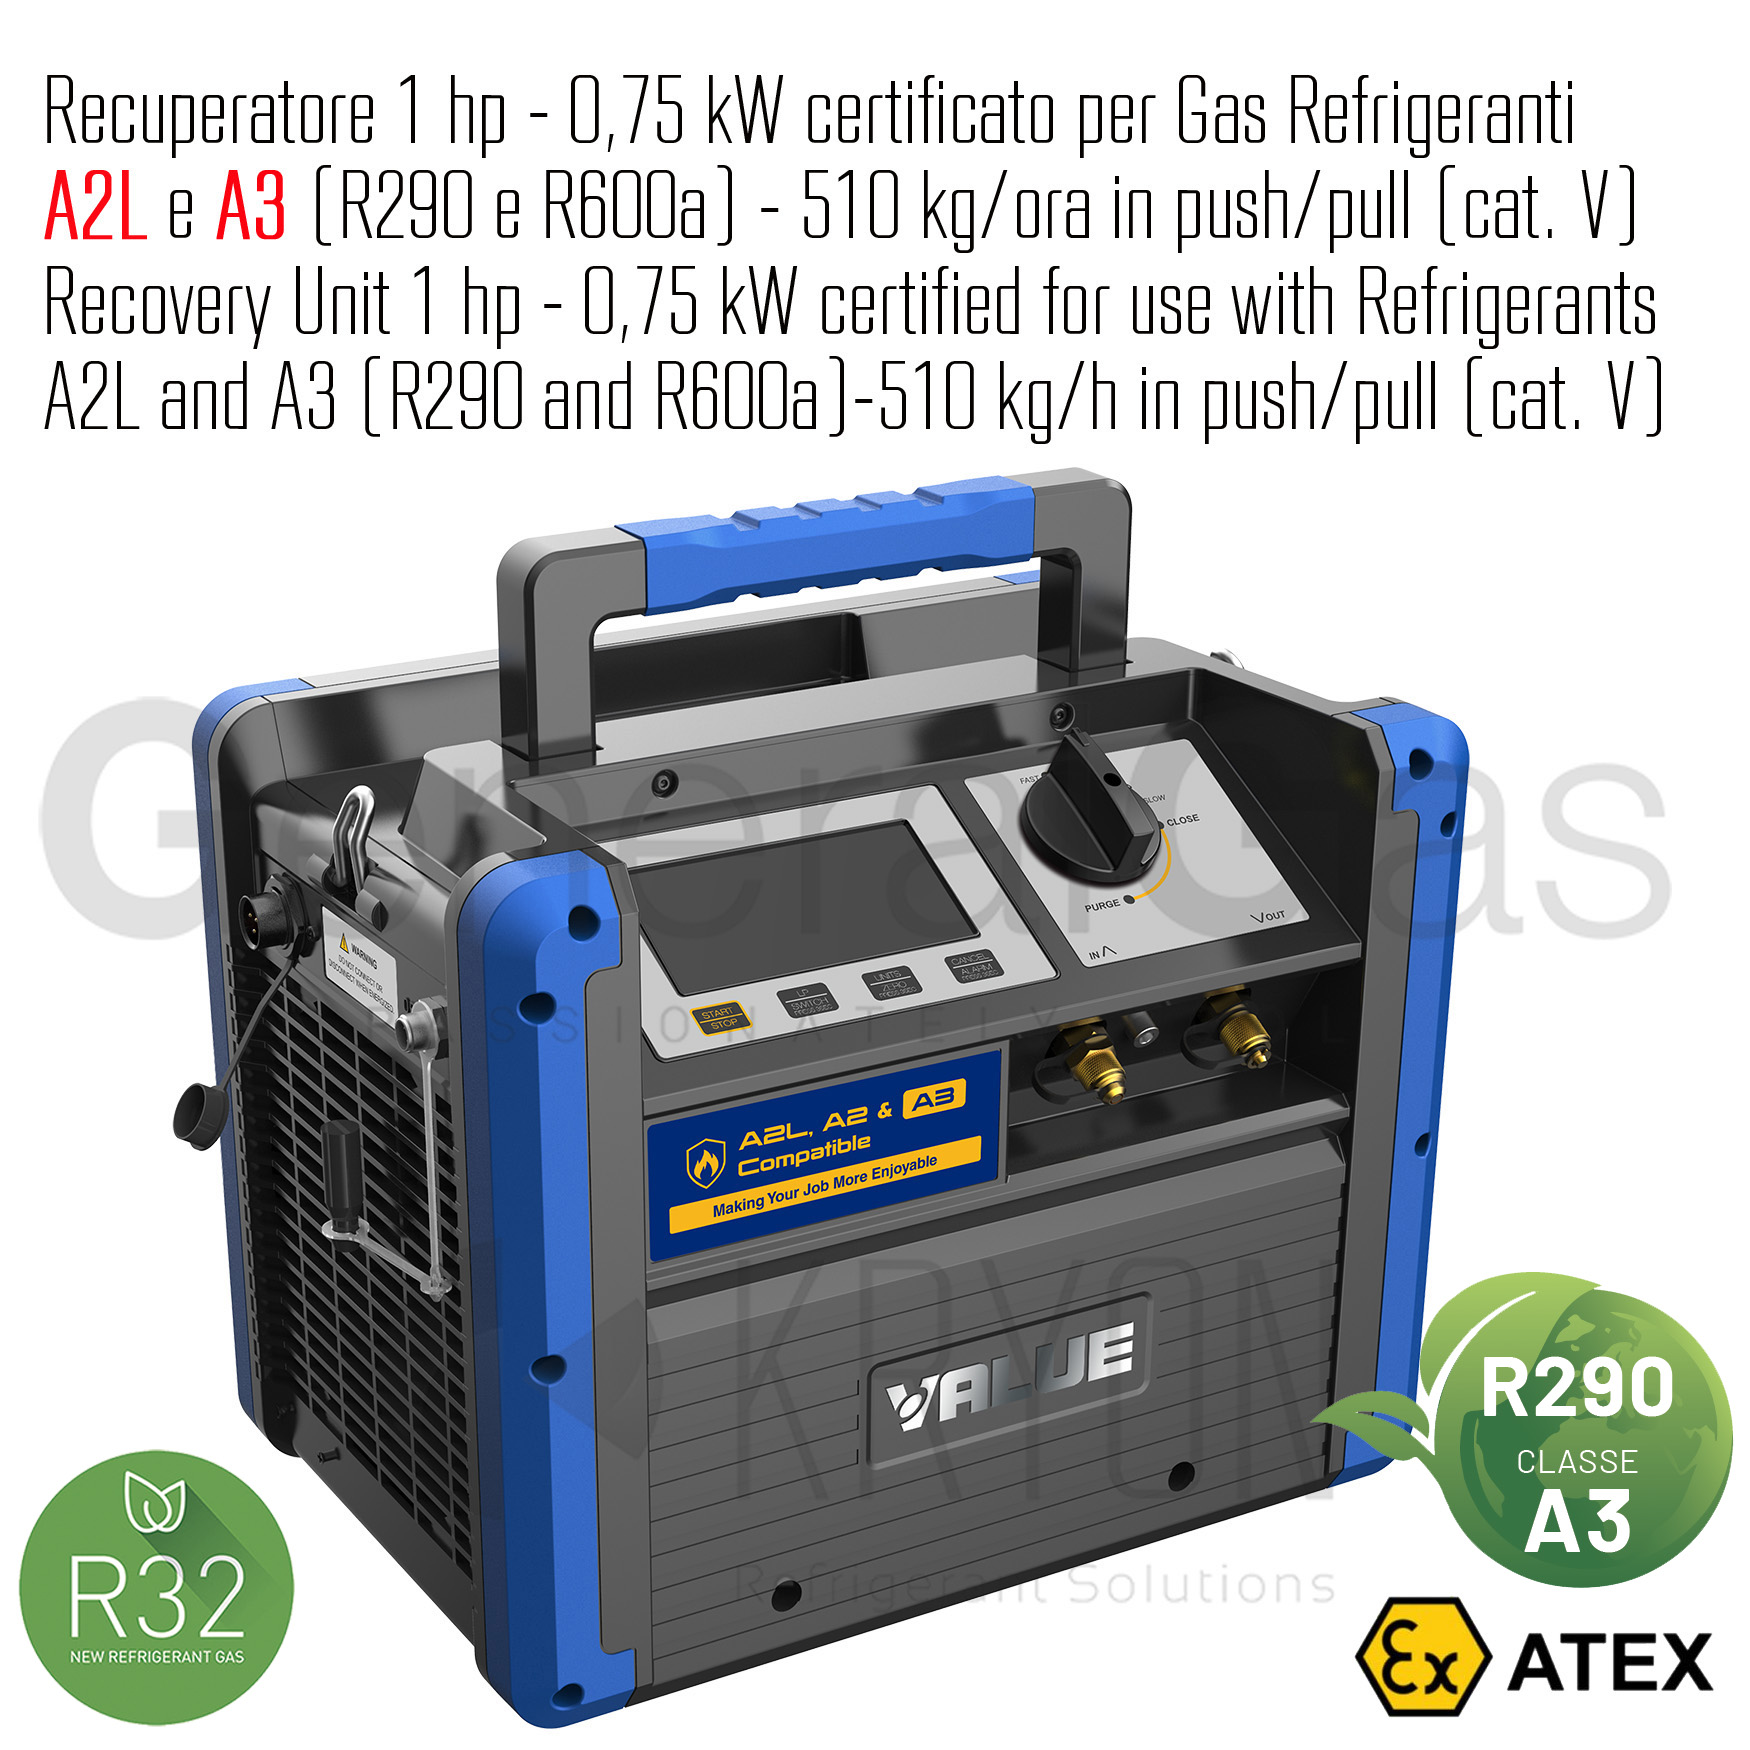 VALUE VRDDF - Recuperatore certificato ATEX per gas infiammabili 1 HP-0,75 KW, 510 kg/ora in push/pull, adatto anche per refrigeranti A2L e A3 (propano R290)